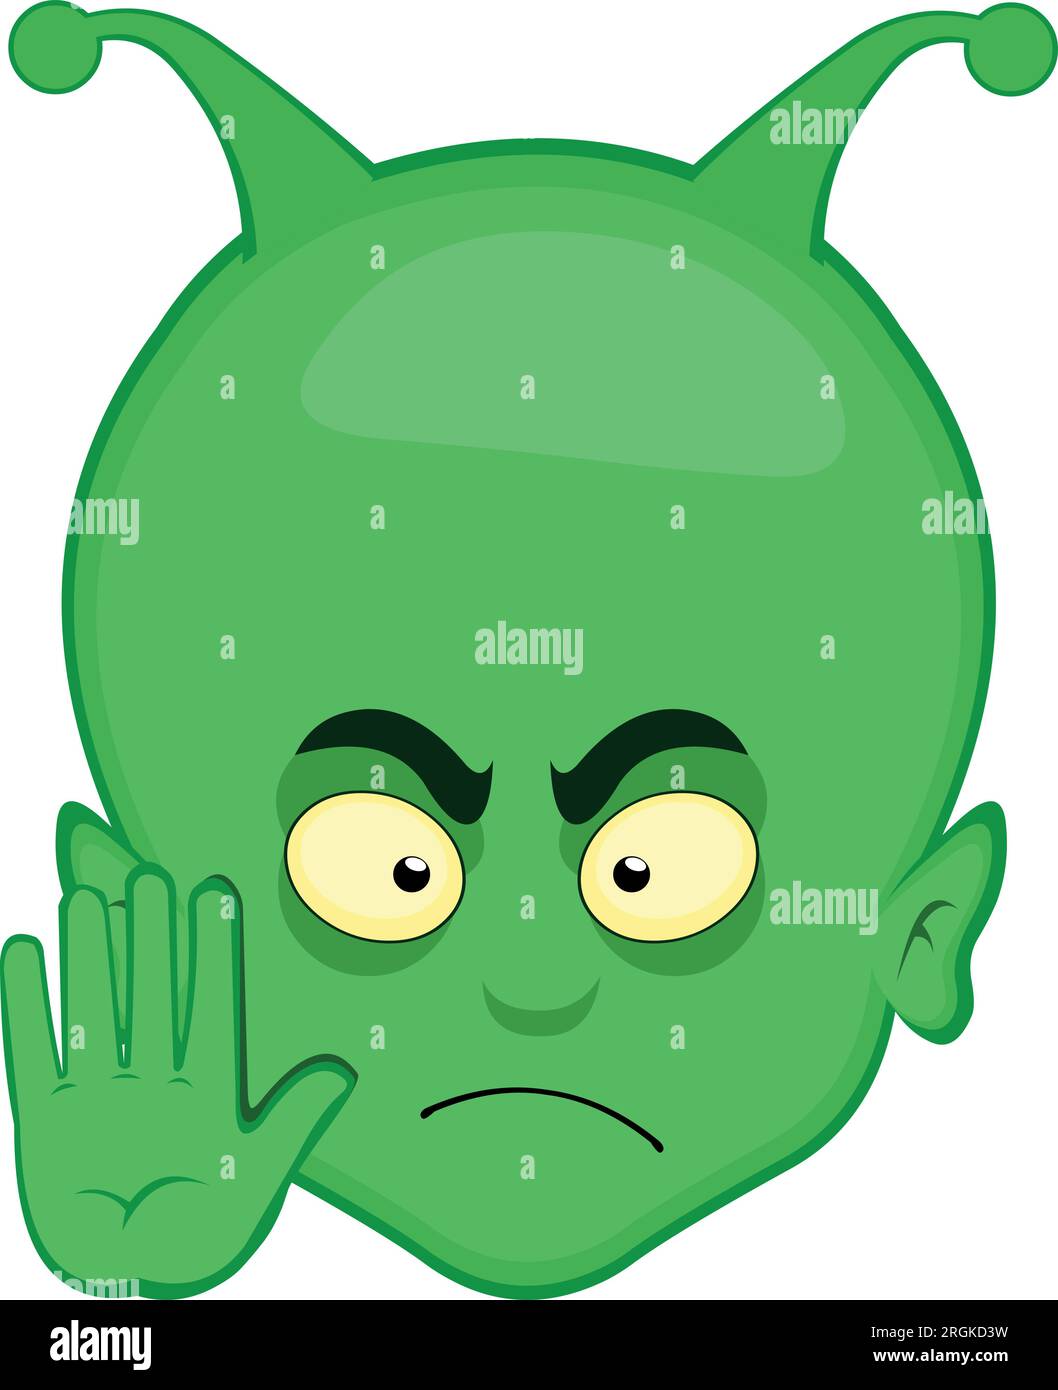 vector green alien et head cartoon hand stop gesture Stock Vector